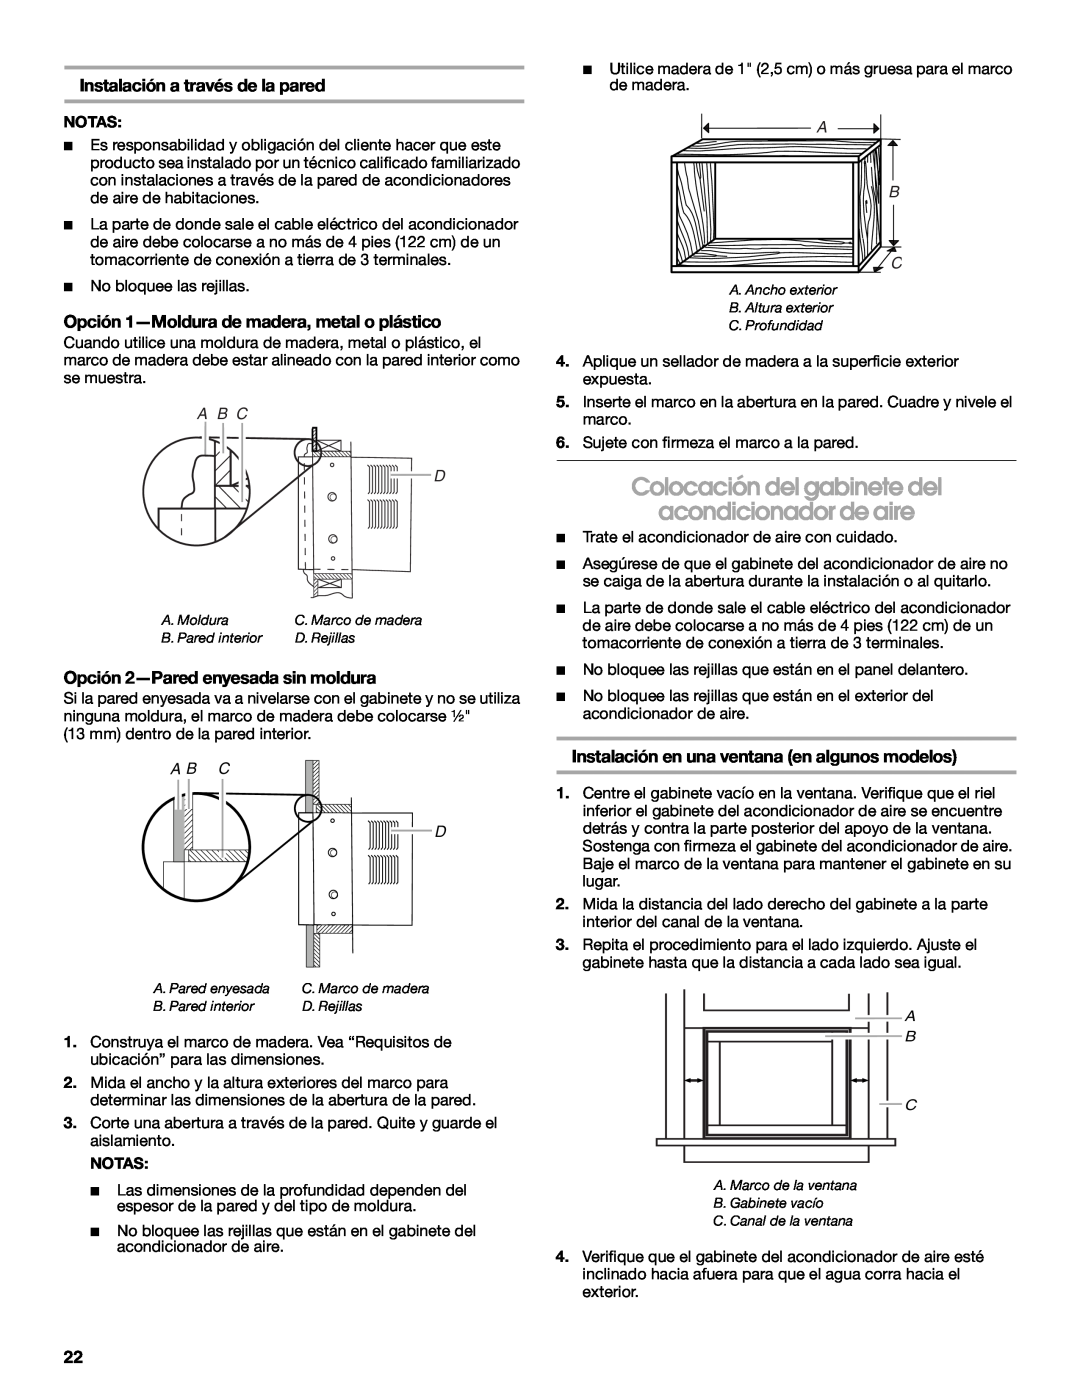 Whirlpool ACC082XR0 manual Colocación del gabinete del, acondicionador de aire, Opción 1-Moldurade madera, metal o plástico 